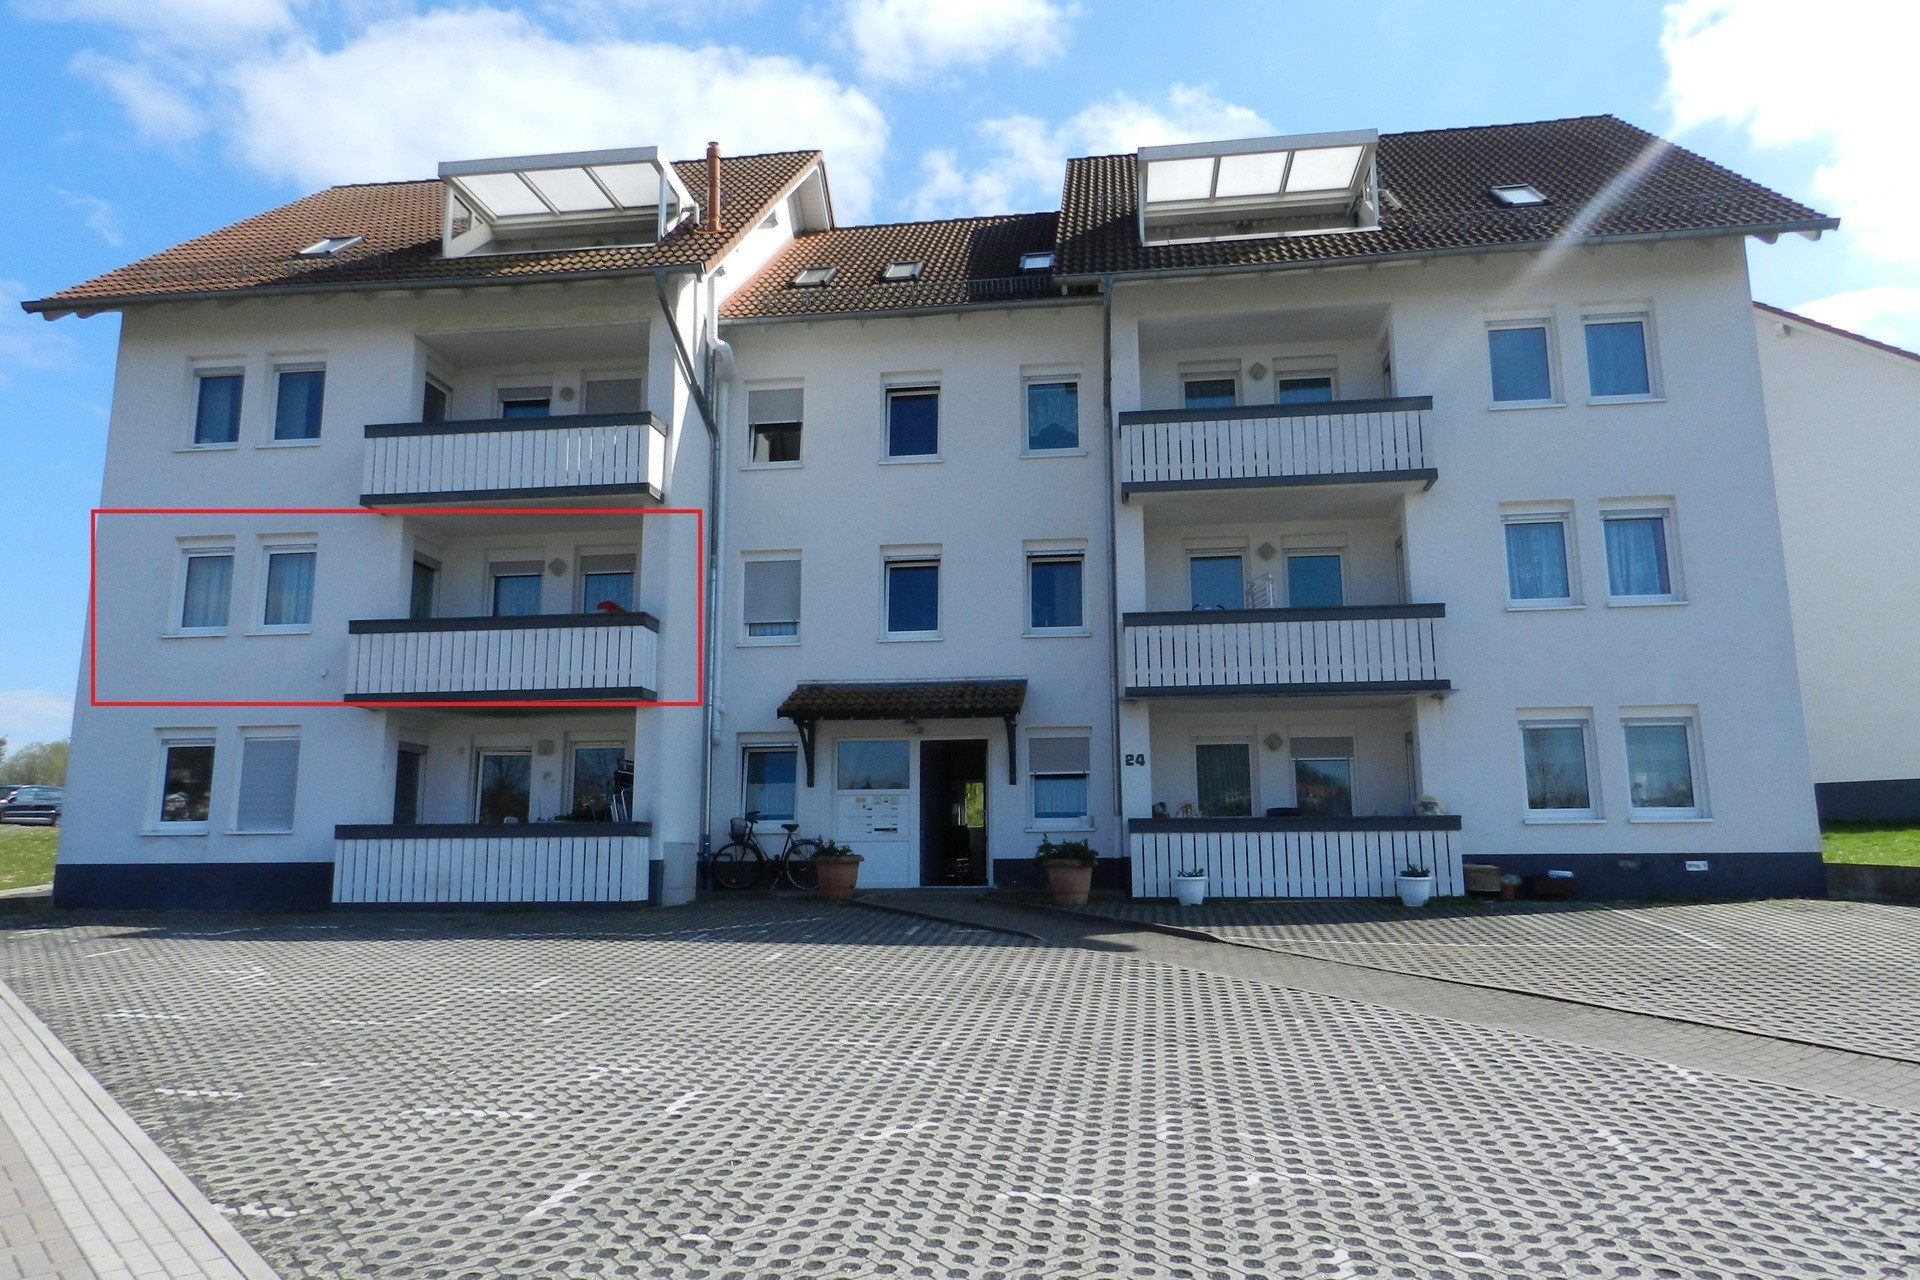 Immobilienangebot - Homberg - Alle - Gemütliche 3ZKB Wohnung mit schönem Ausblick auf Homberg (Efze)!